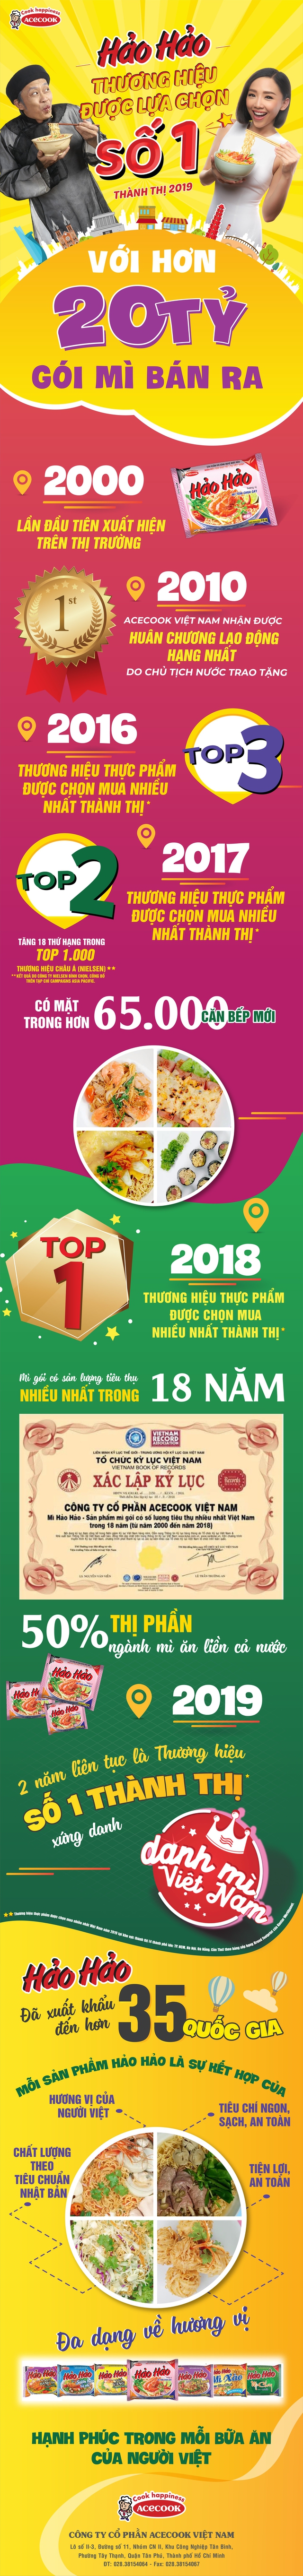 Hảo Hảo - Mì ăn liền được chọn mua nhiều nhất 2019 - Ảnh 1.